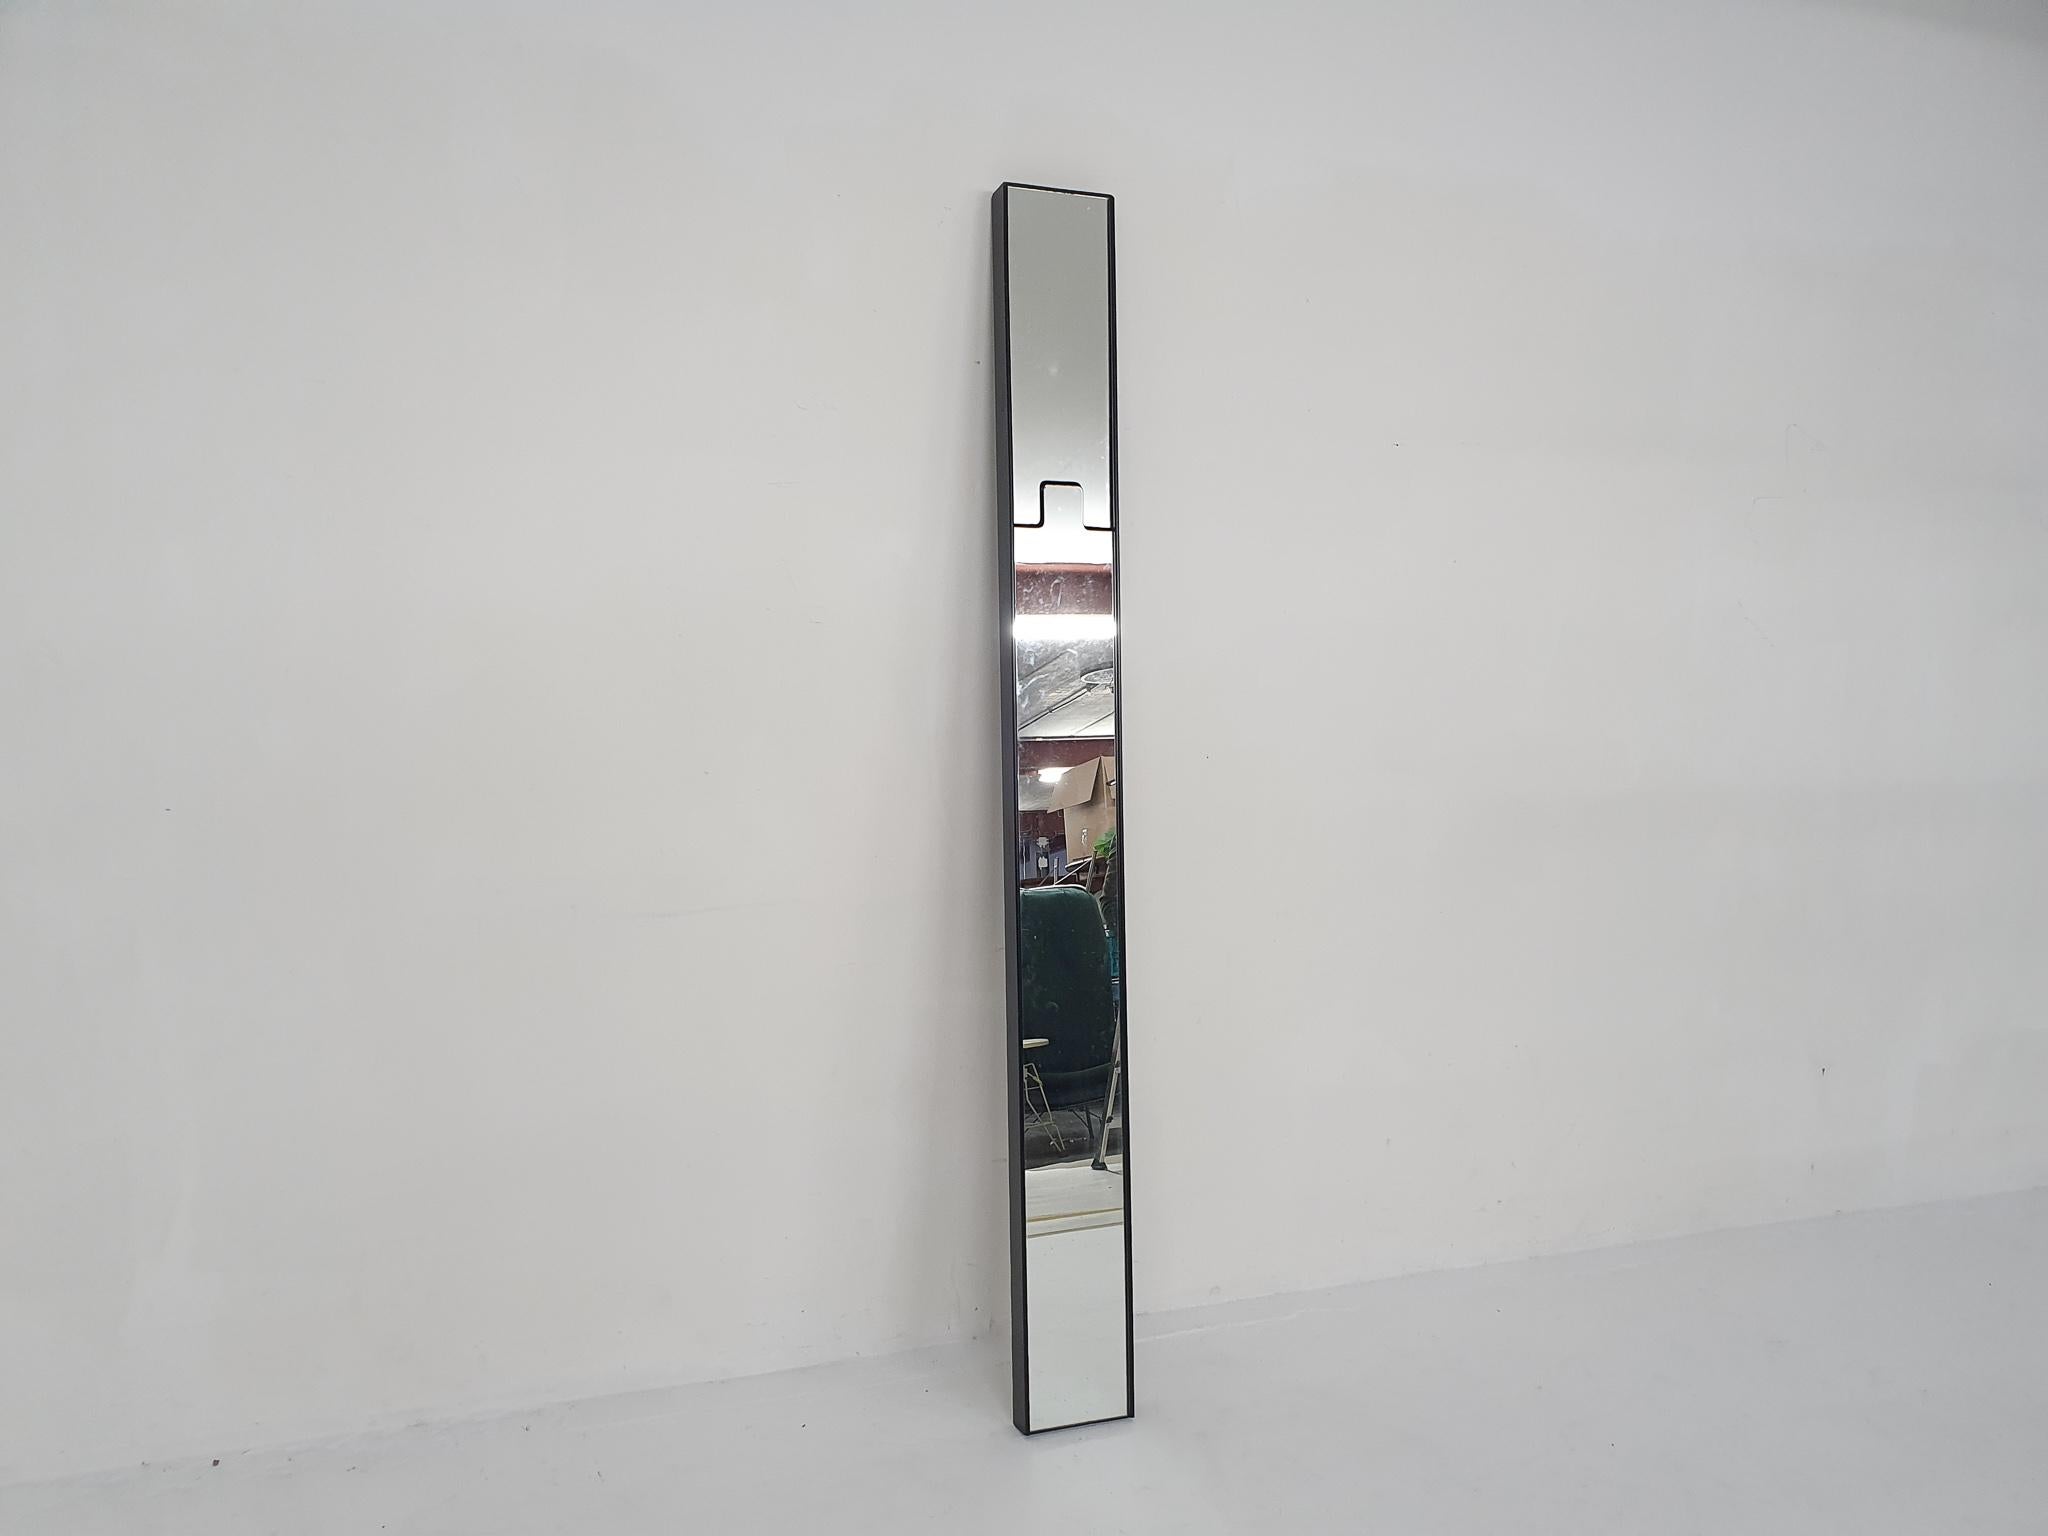 Mid-Century Modern Italian design mirror by Luciano Bertoncini, 1980's